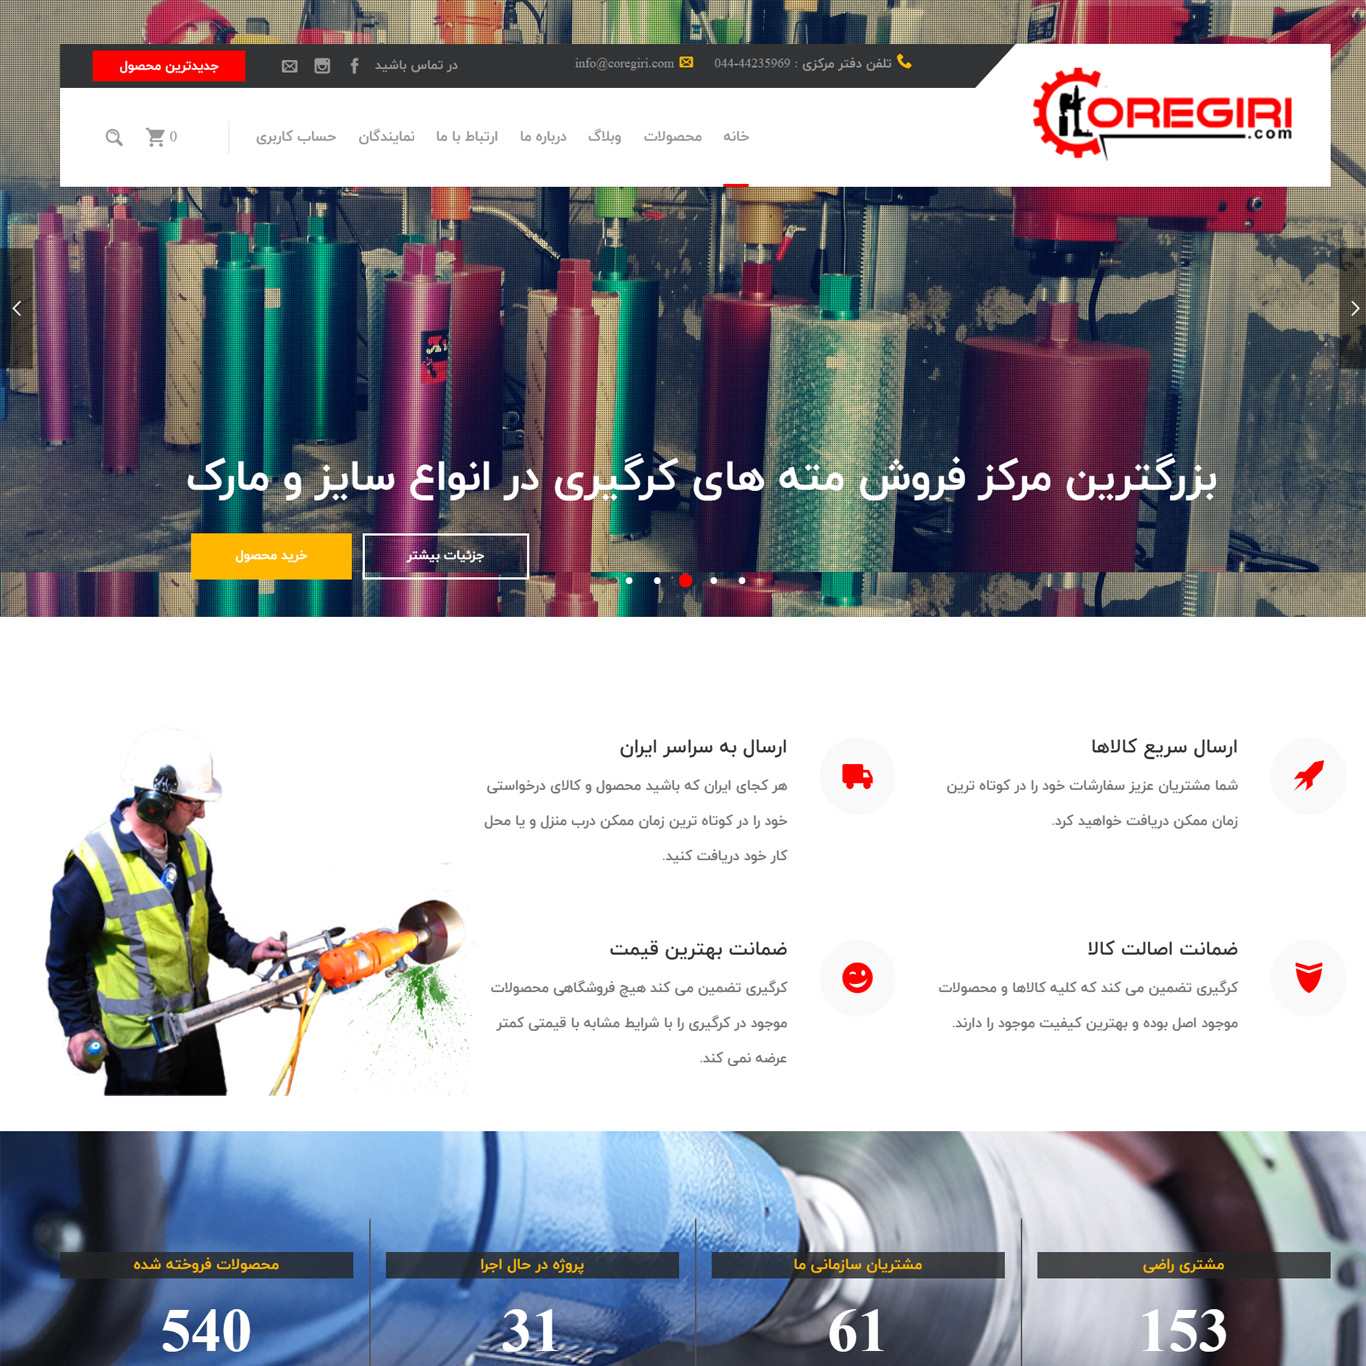 طراحی سایت فروشگاه کرگیری توسط شرکت فناوری اطلاعات ژیوار